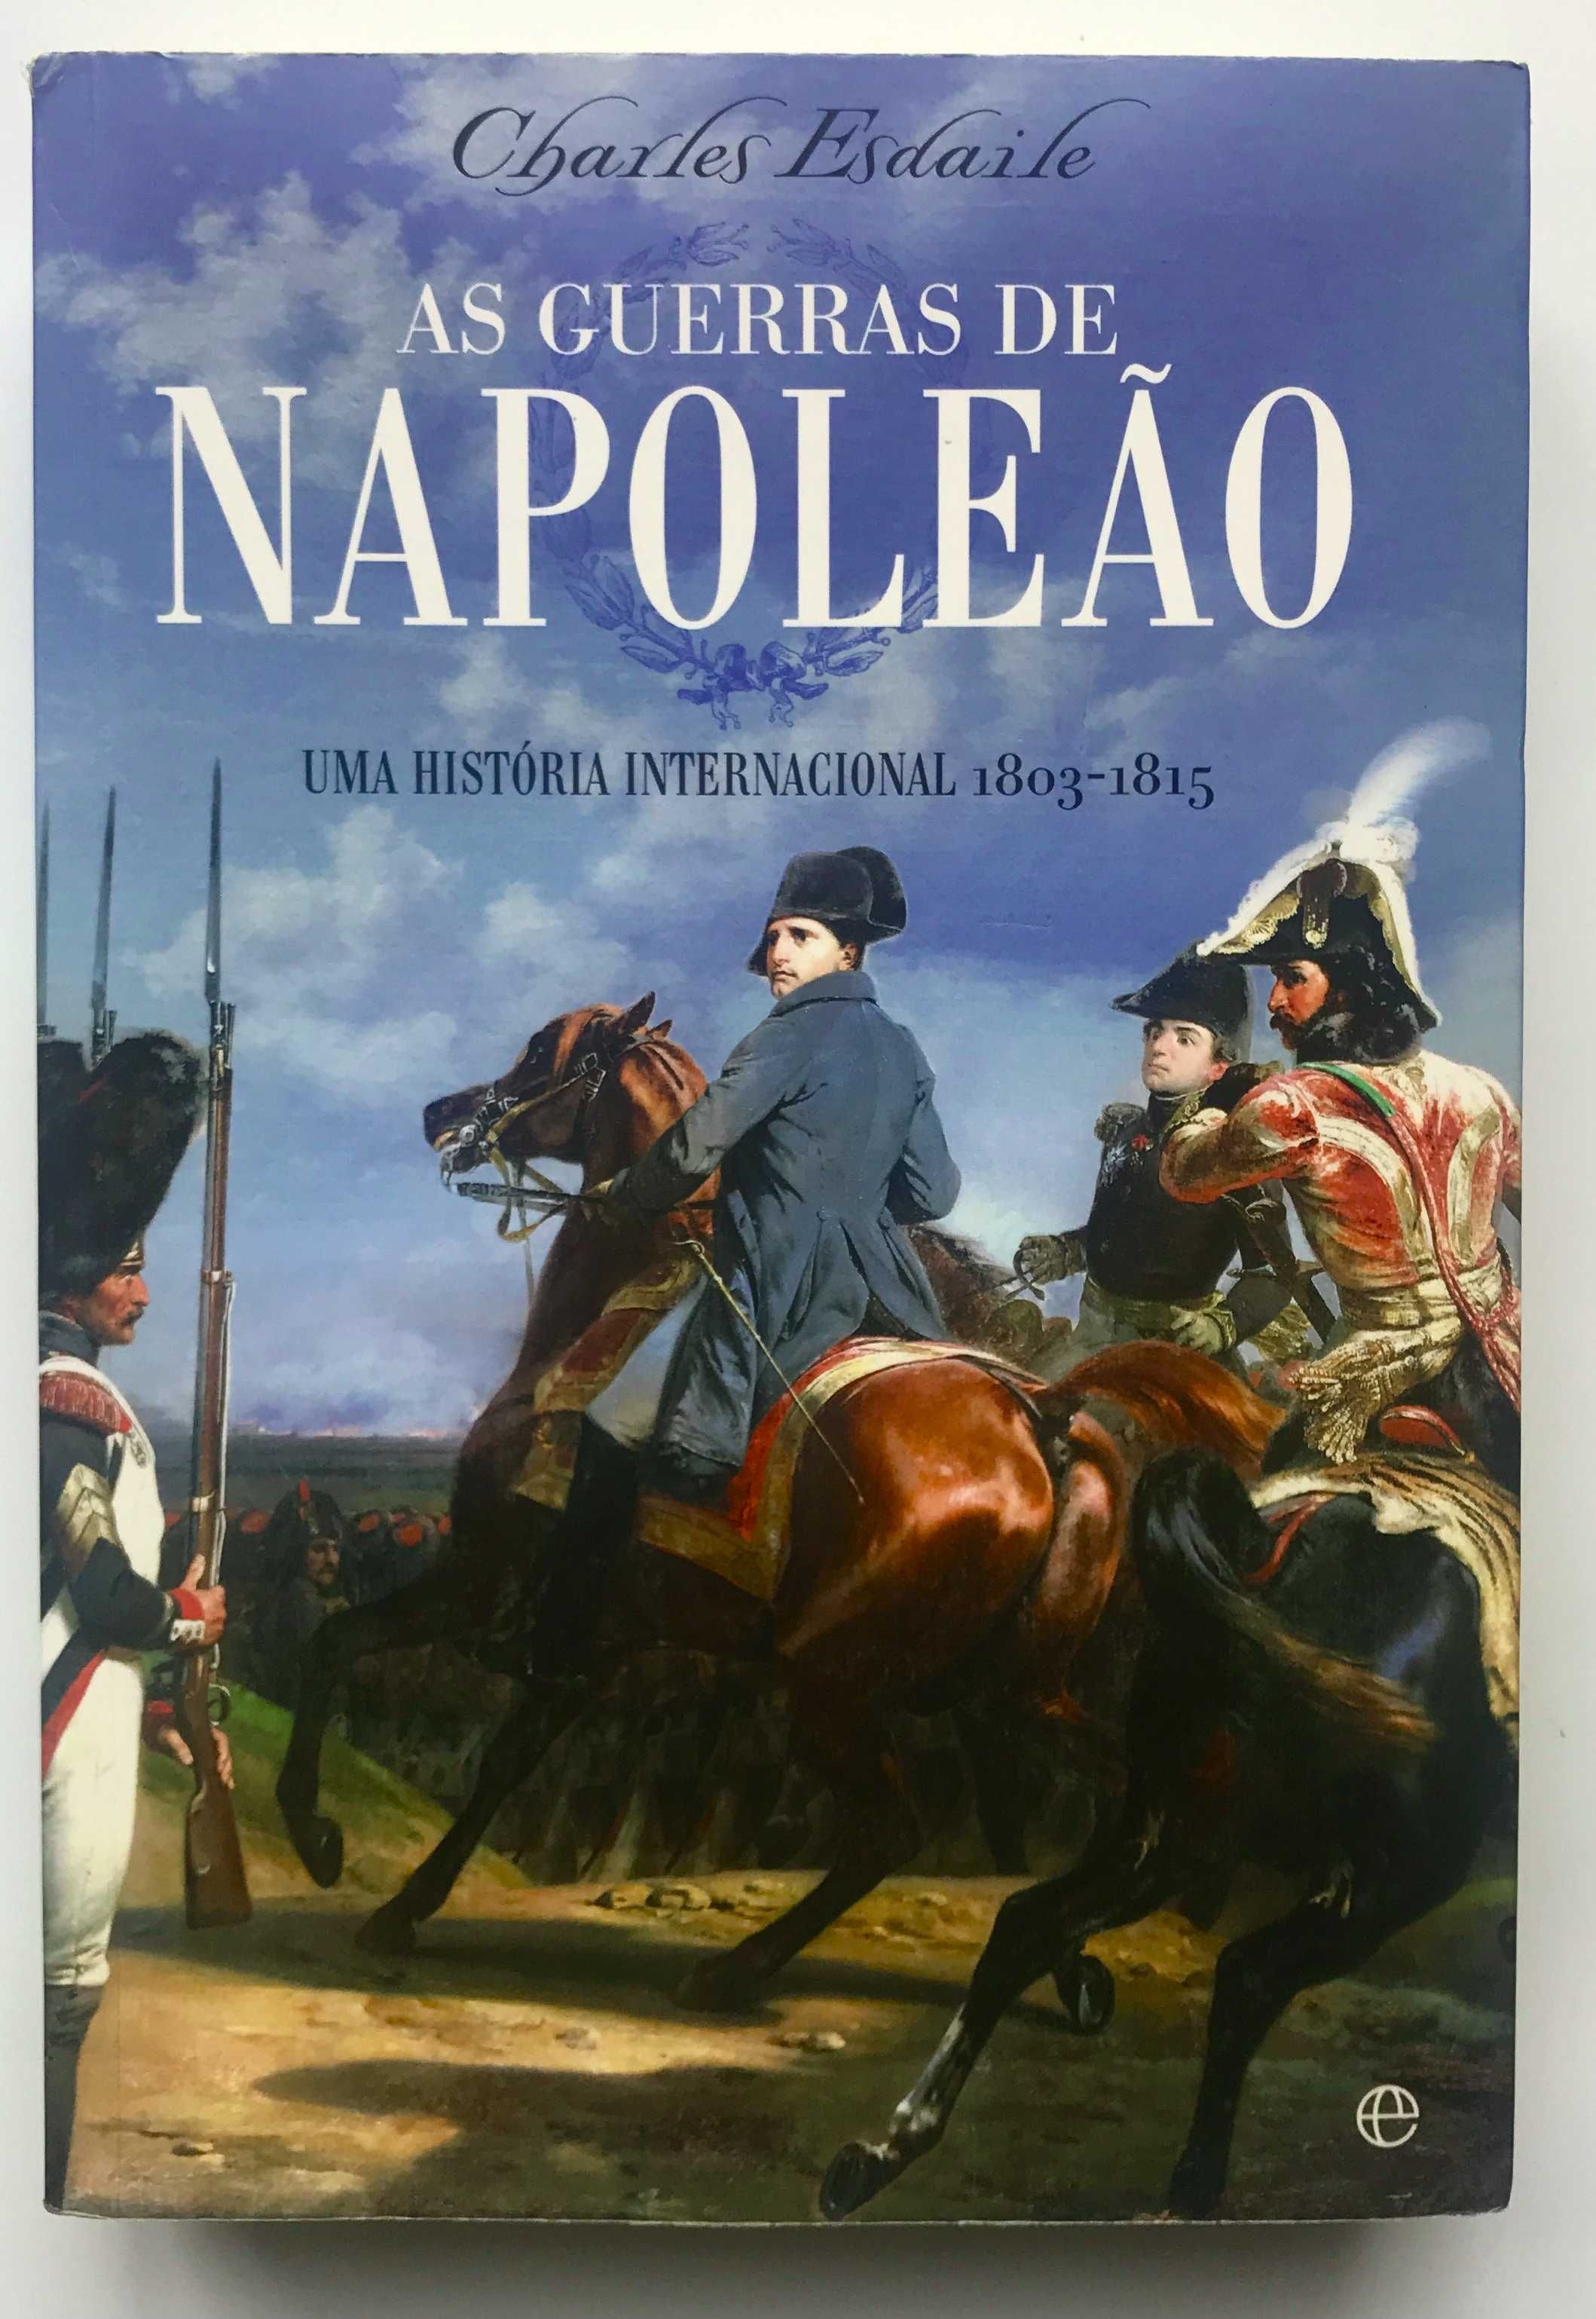 As Guerras de Napoleão de Charles Esdaile - Envio gratuito